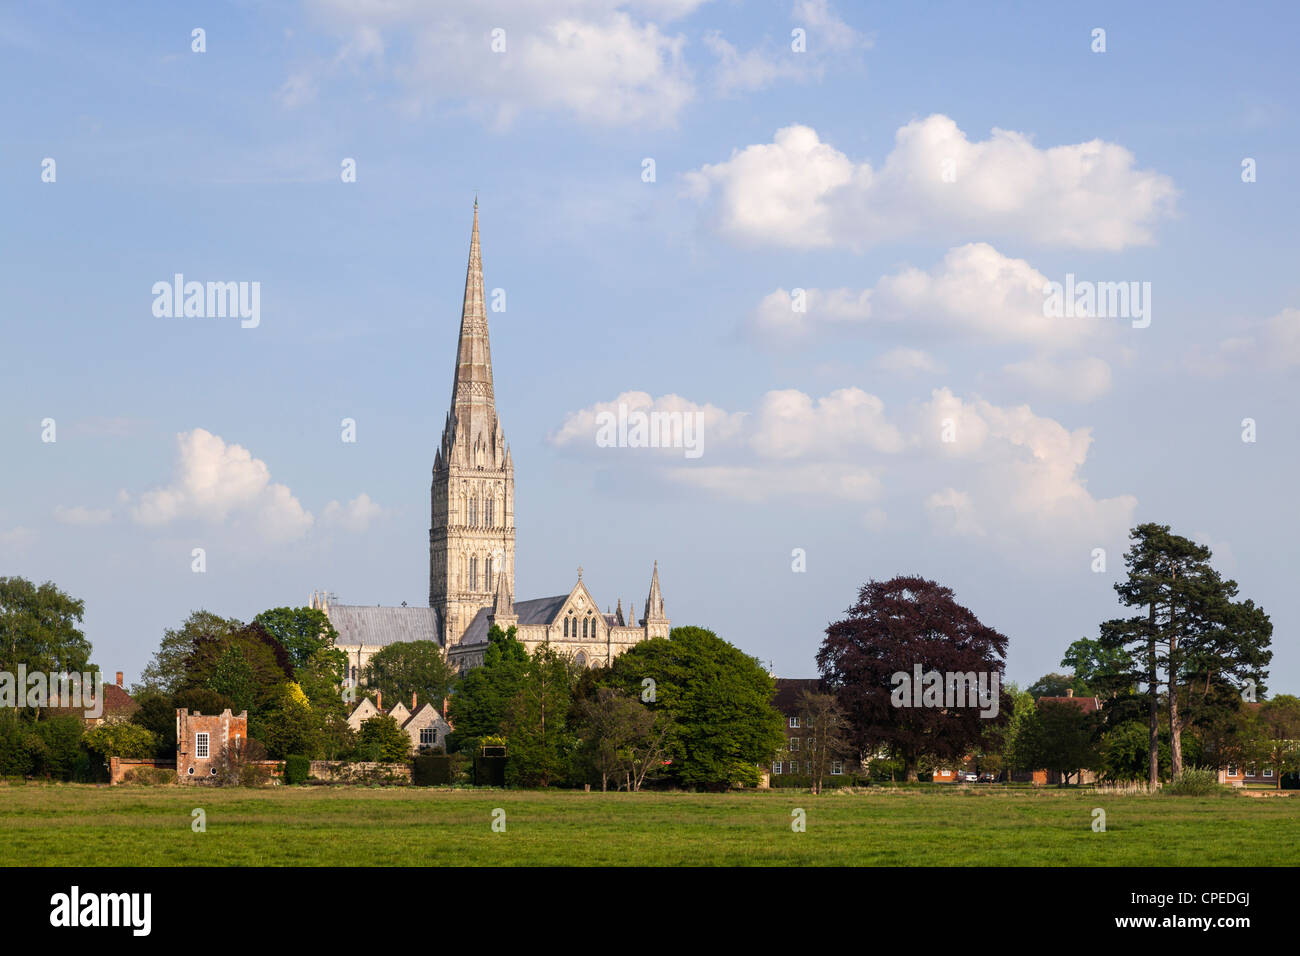 La cathédrale de Salisbury, construite entre 1310 et 1330, possède la plus haute flèche d'Angleterre. Salisbury, Wiltshire Angleterre. Banque D'Images